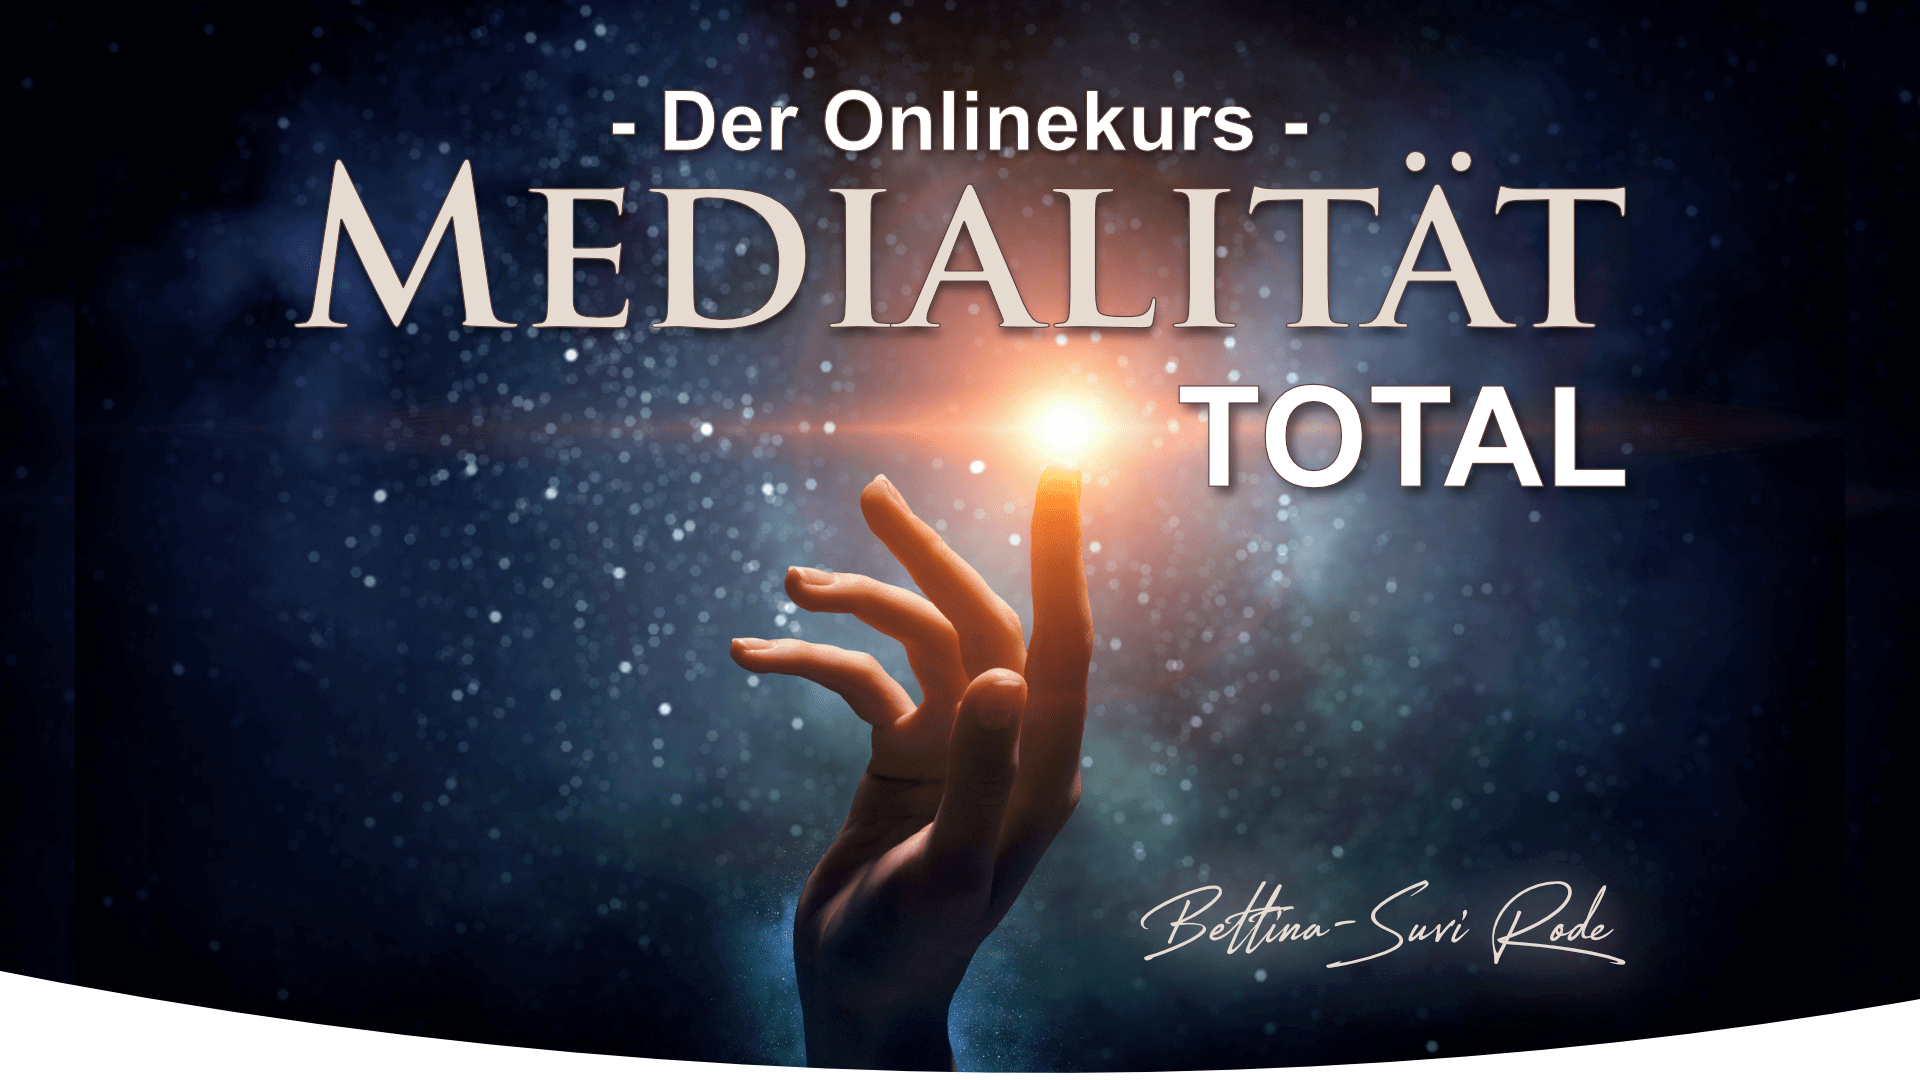 Online Ausbildung "Medialität total" mit dem Medium Bettina-Suvi Rode - becomePro